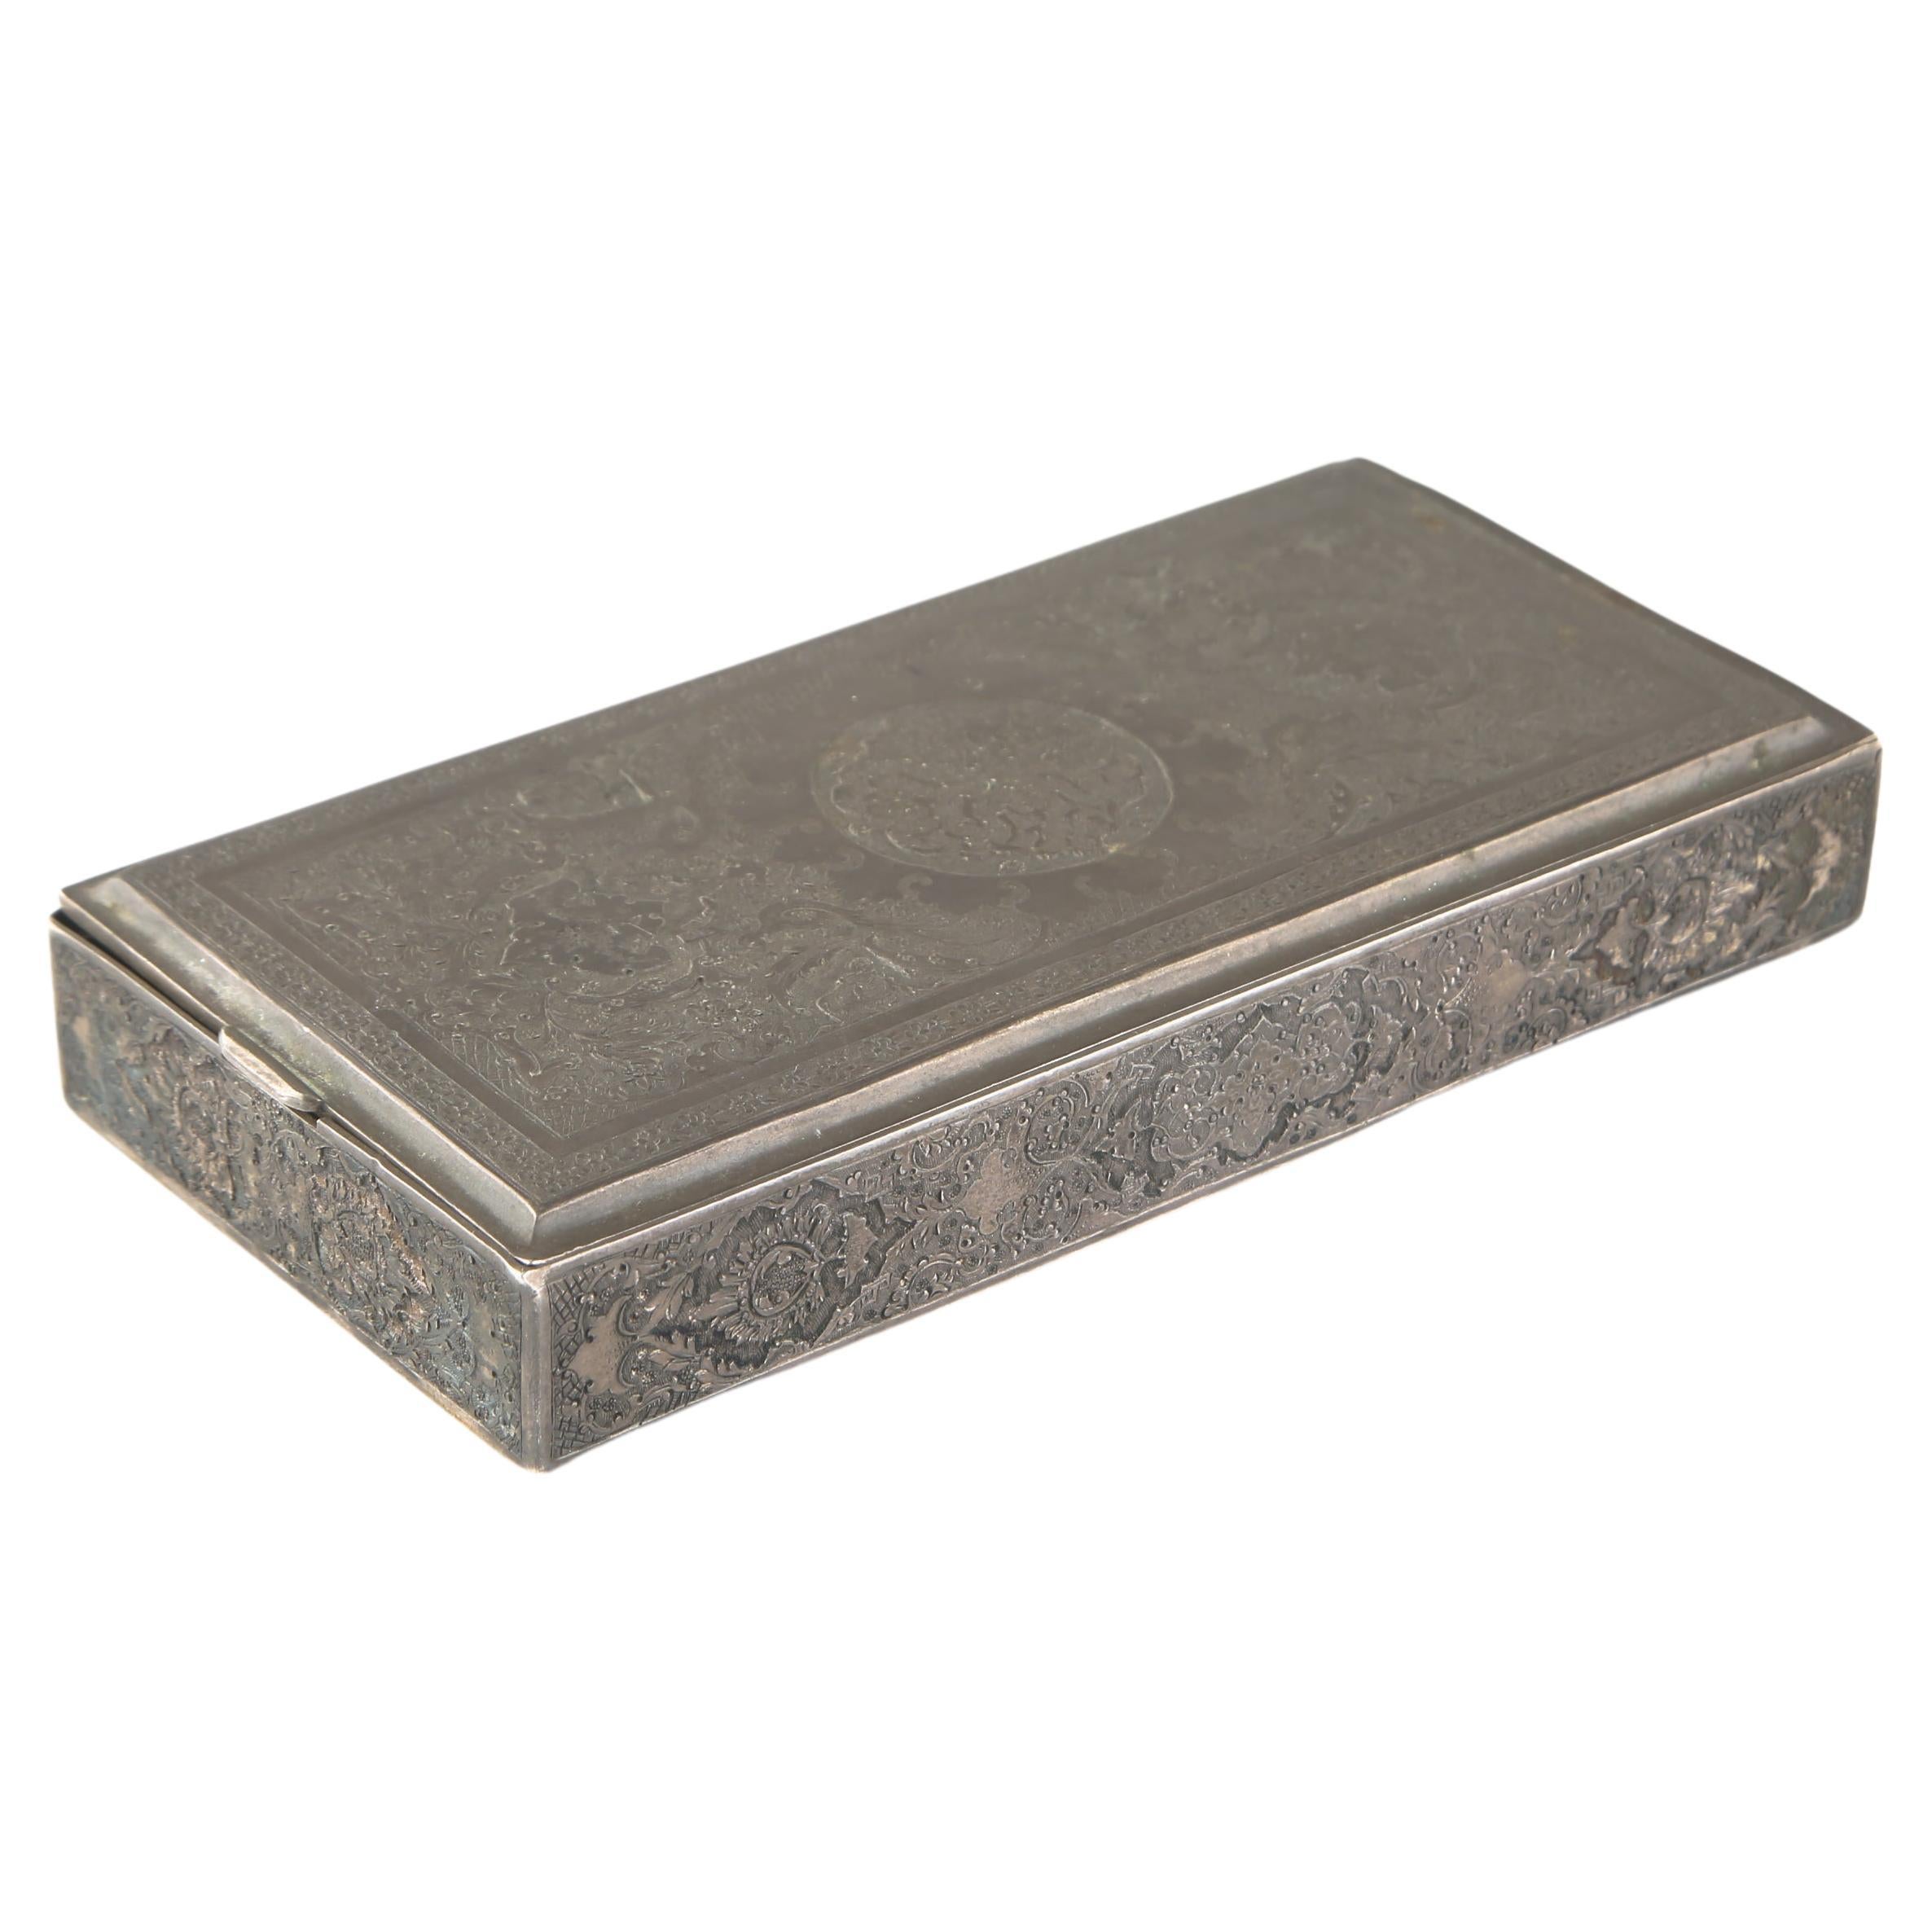 Schöne antike persische Schachtel aus massivem Silber mit Scharnier und gravier mit Scharnier - gestempelt (275 g)